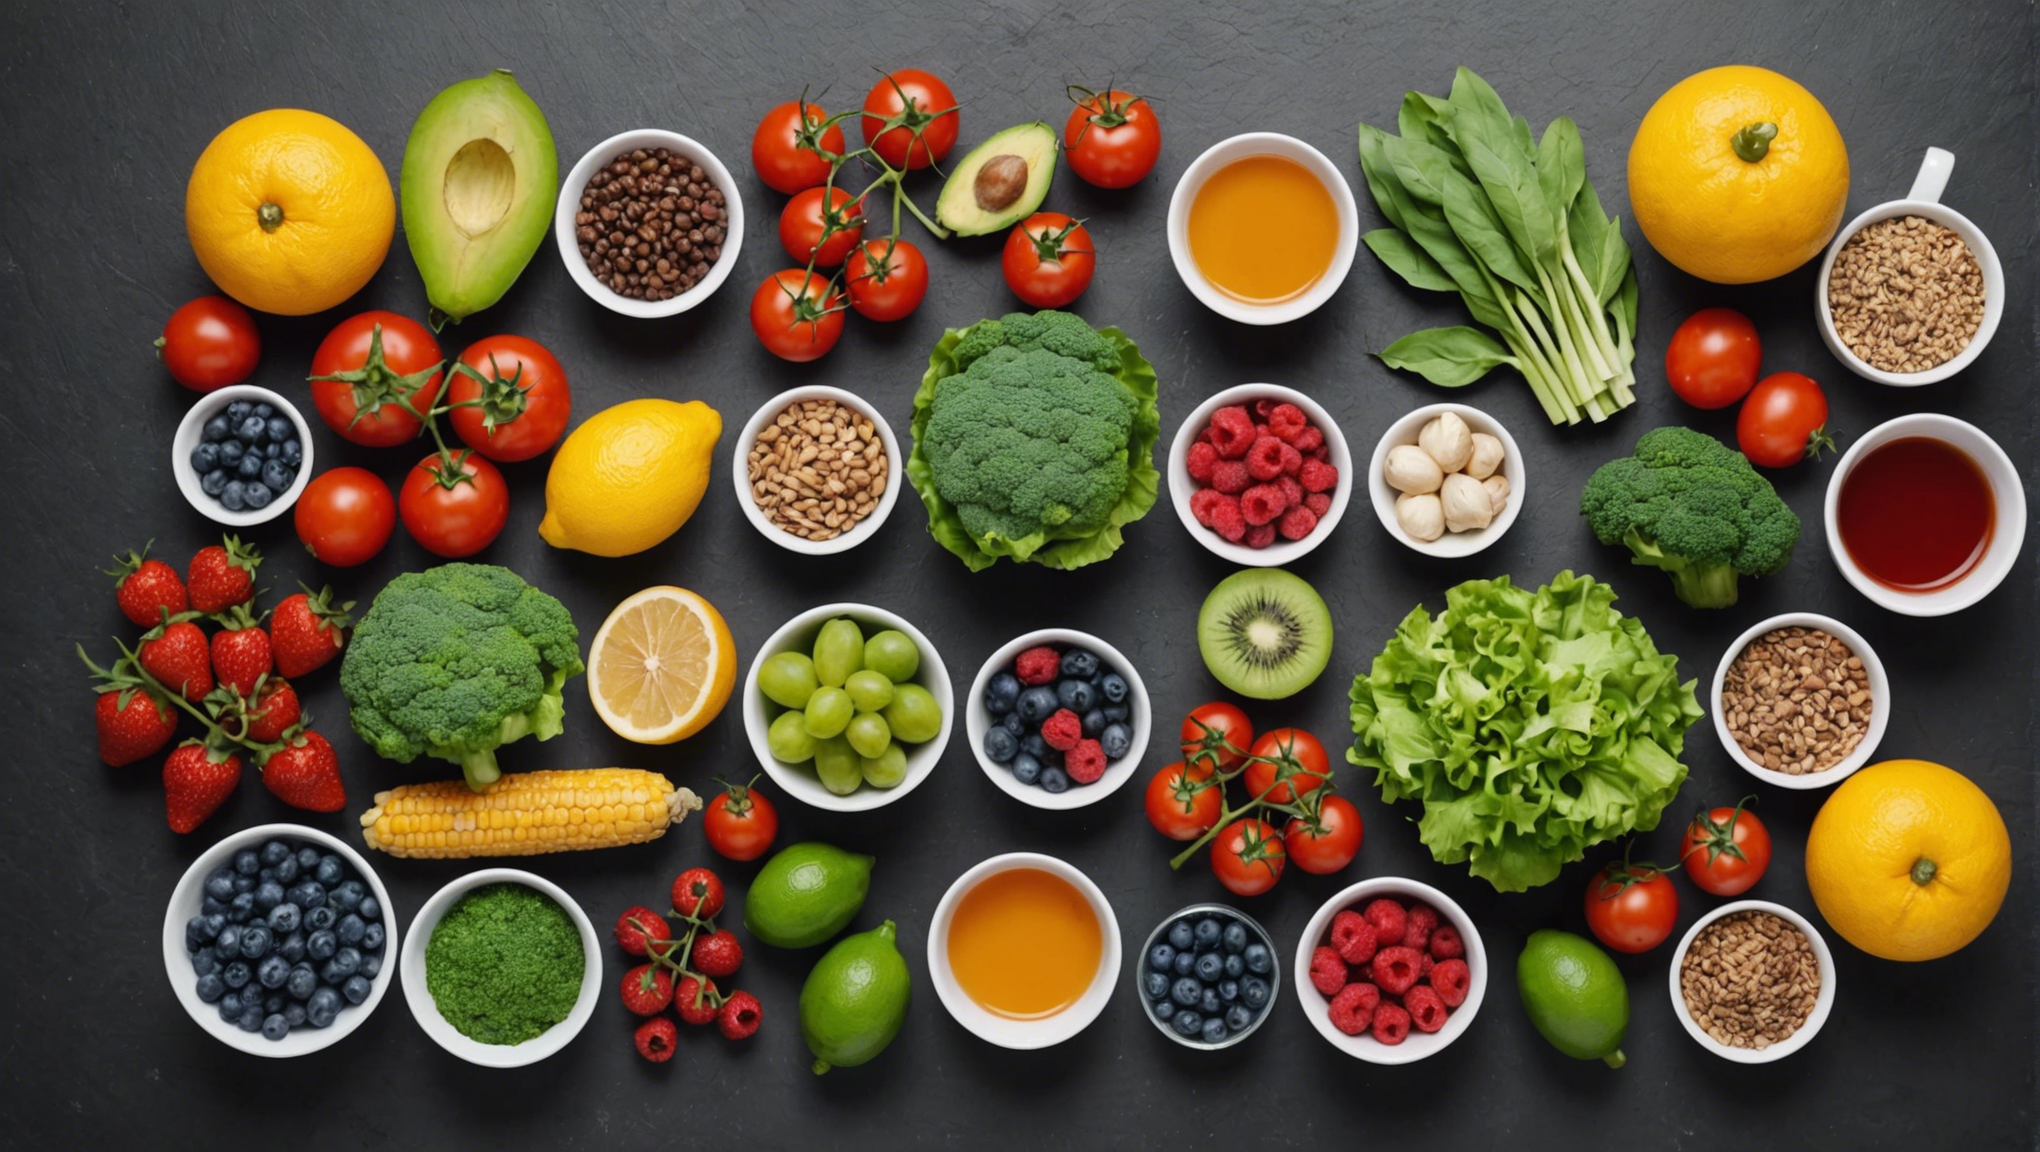 découvrez quels sont les aliments hypotoxiques à privilégier pour une alimentation saine et équilibrée.